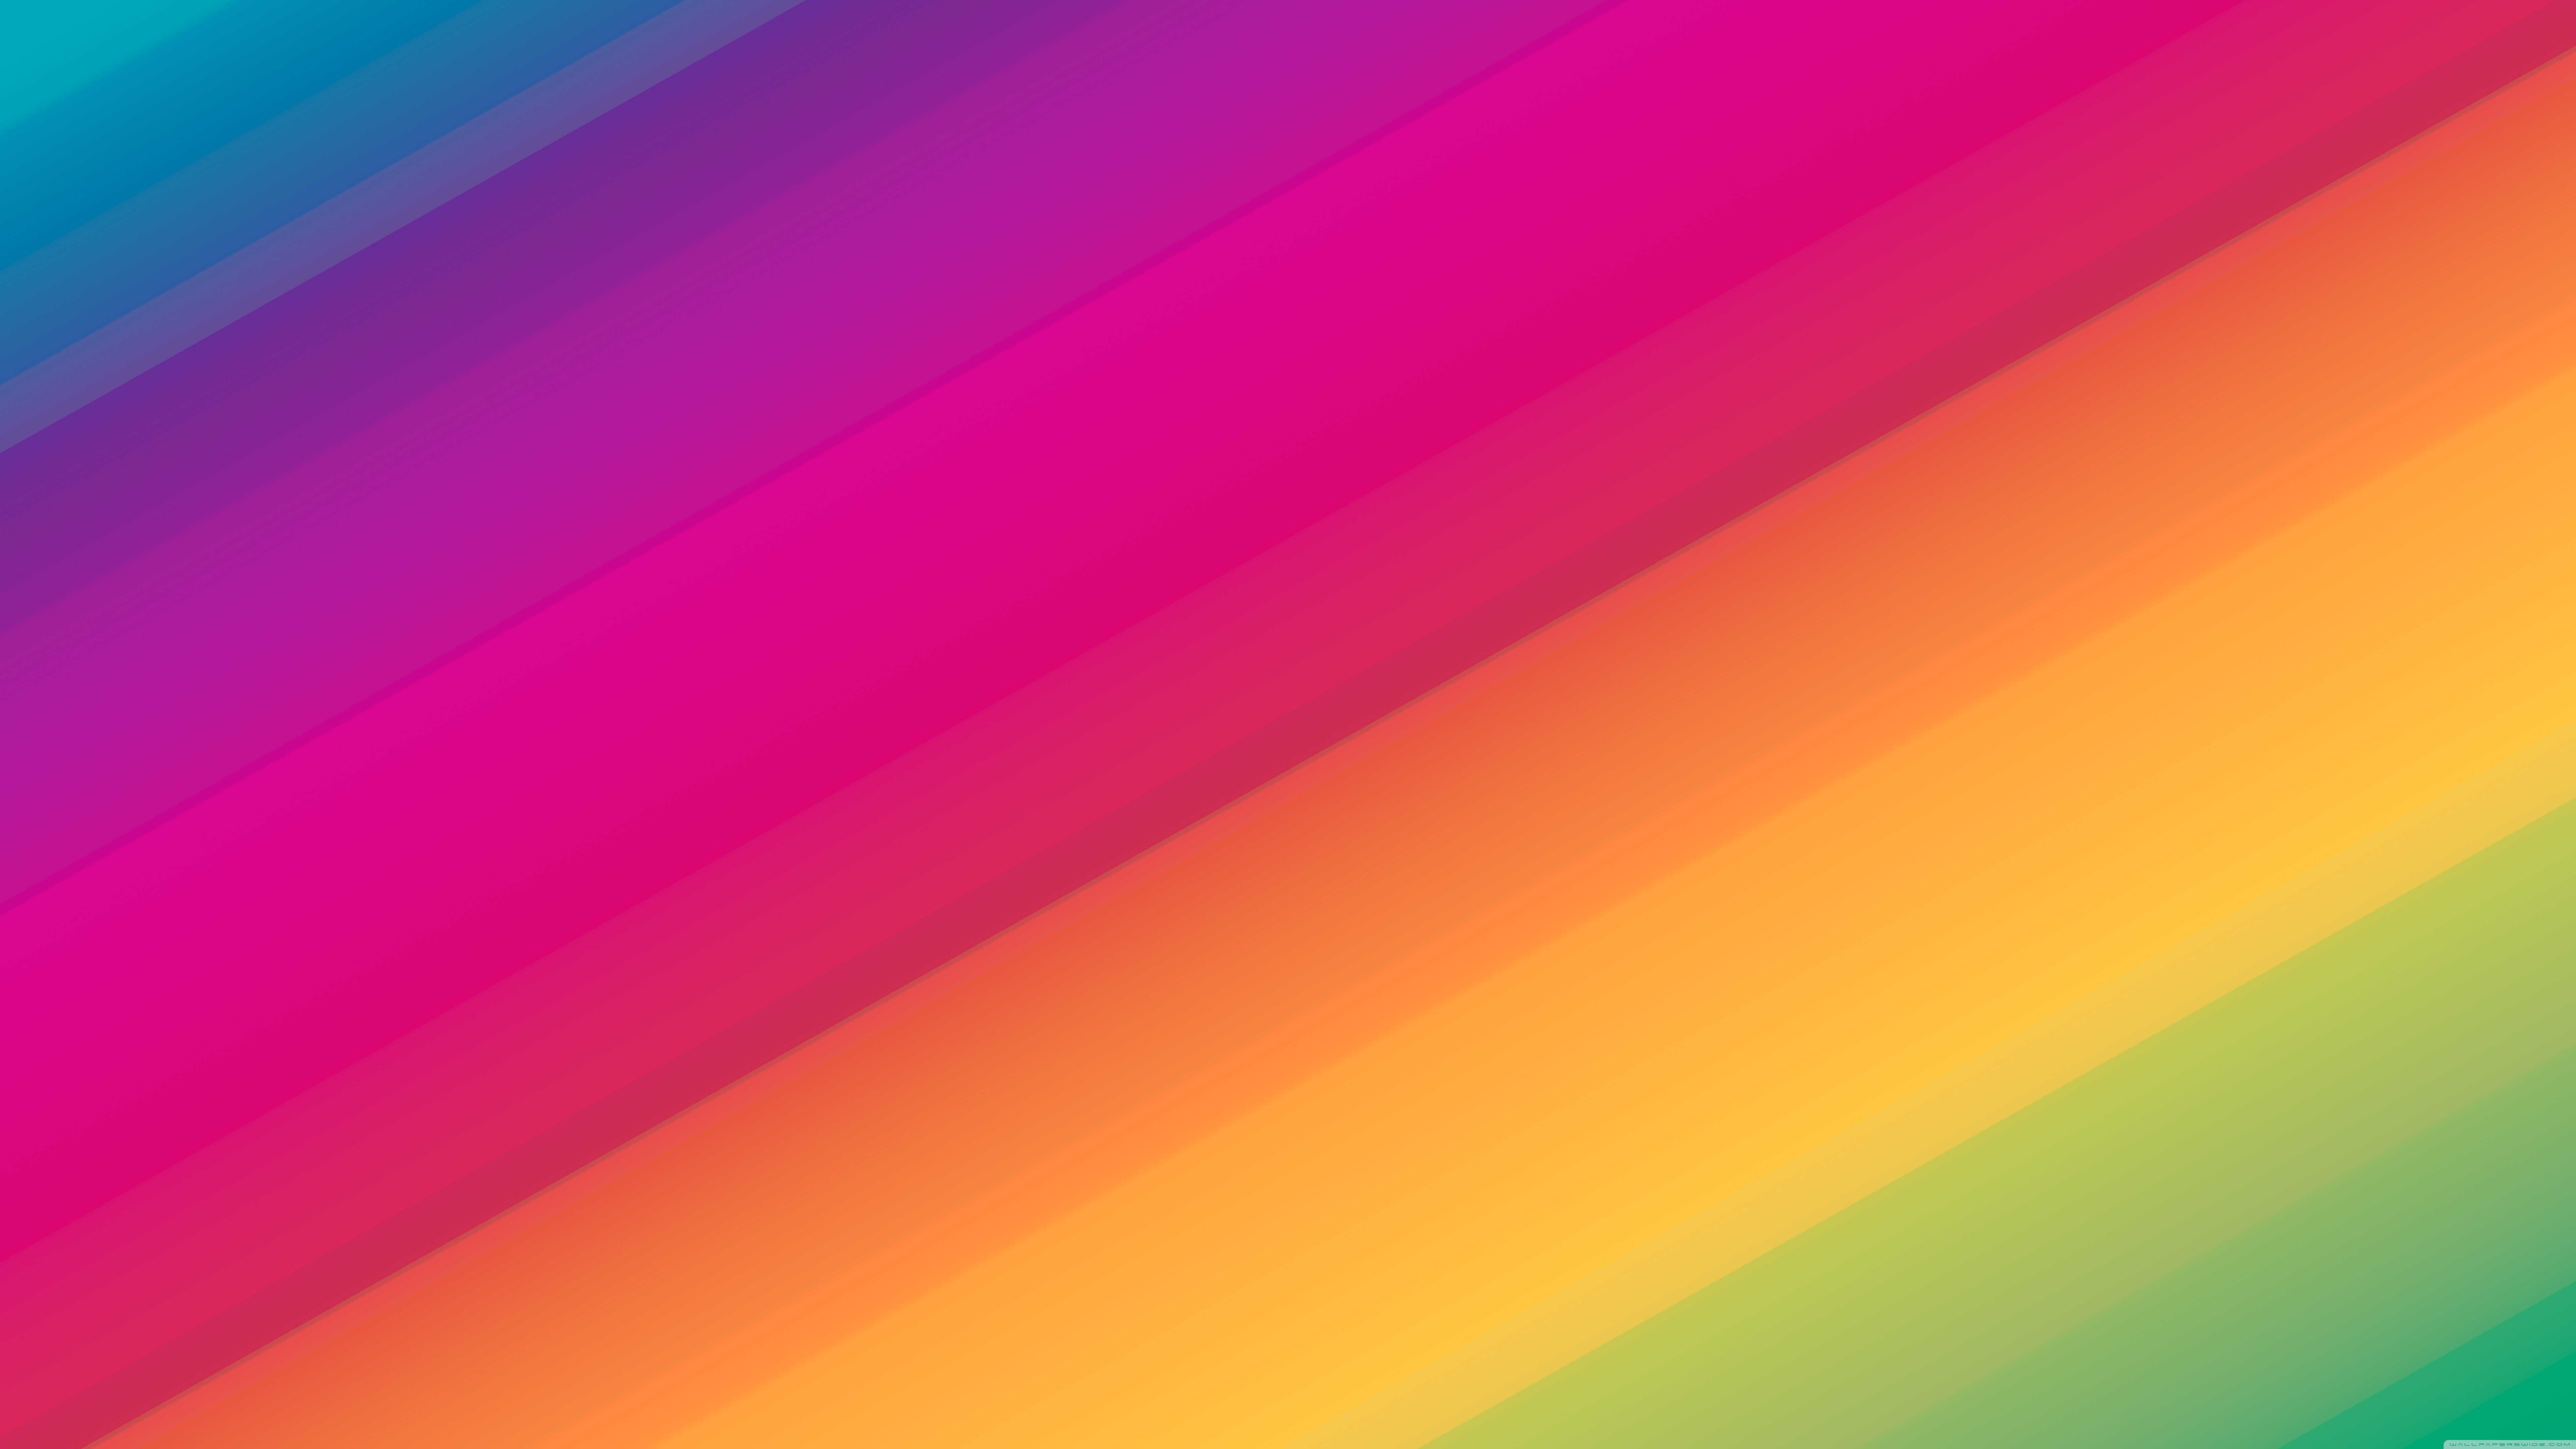 Equalize Colors UHD 8K Wallpaper | Pixelz